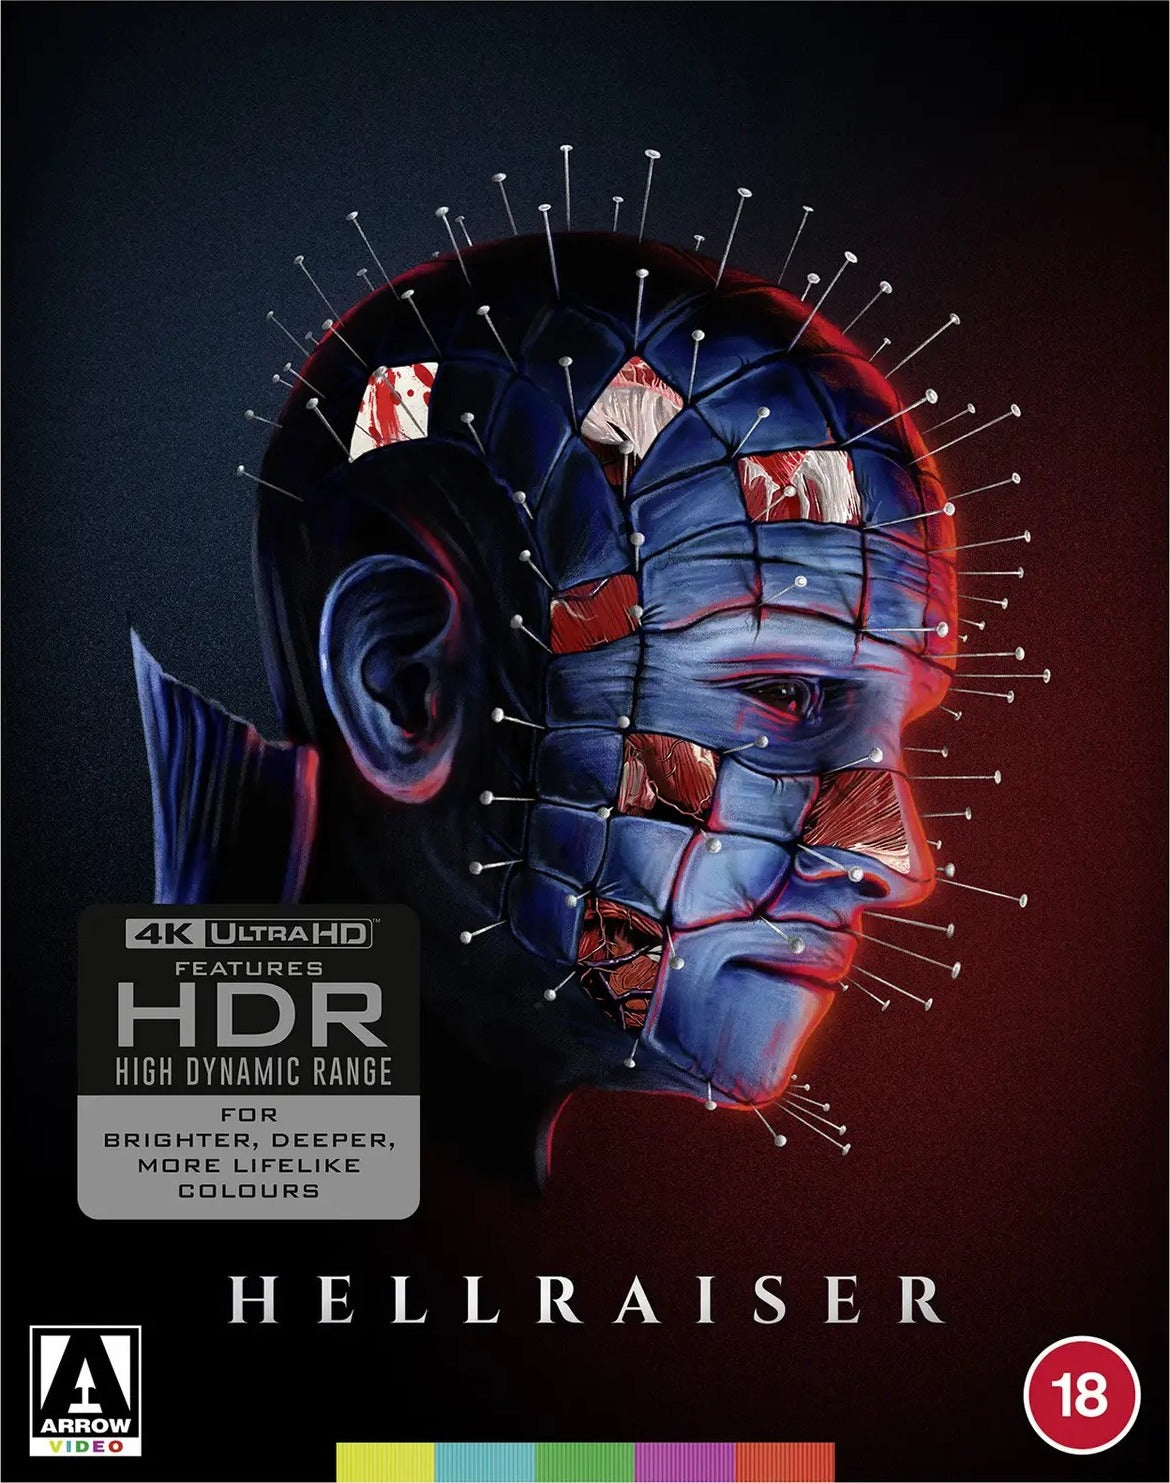 HELLRAISER (REGION FREE IMPORT - LIMITED EDITION) 4K UHD